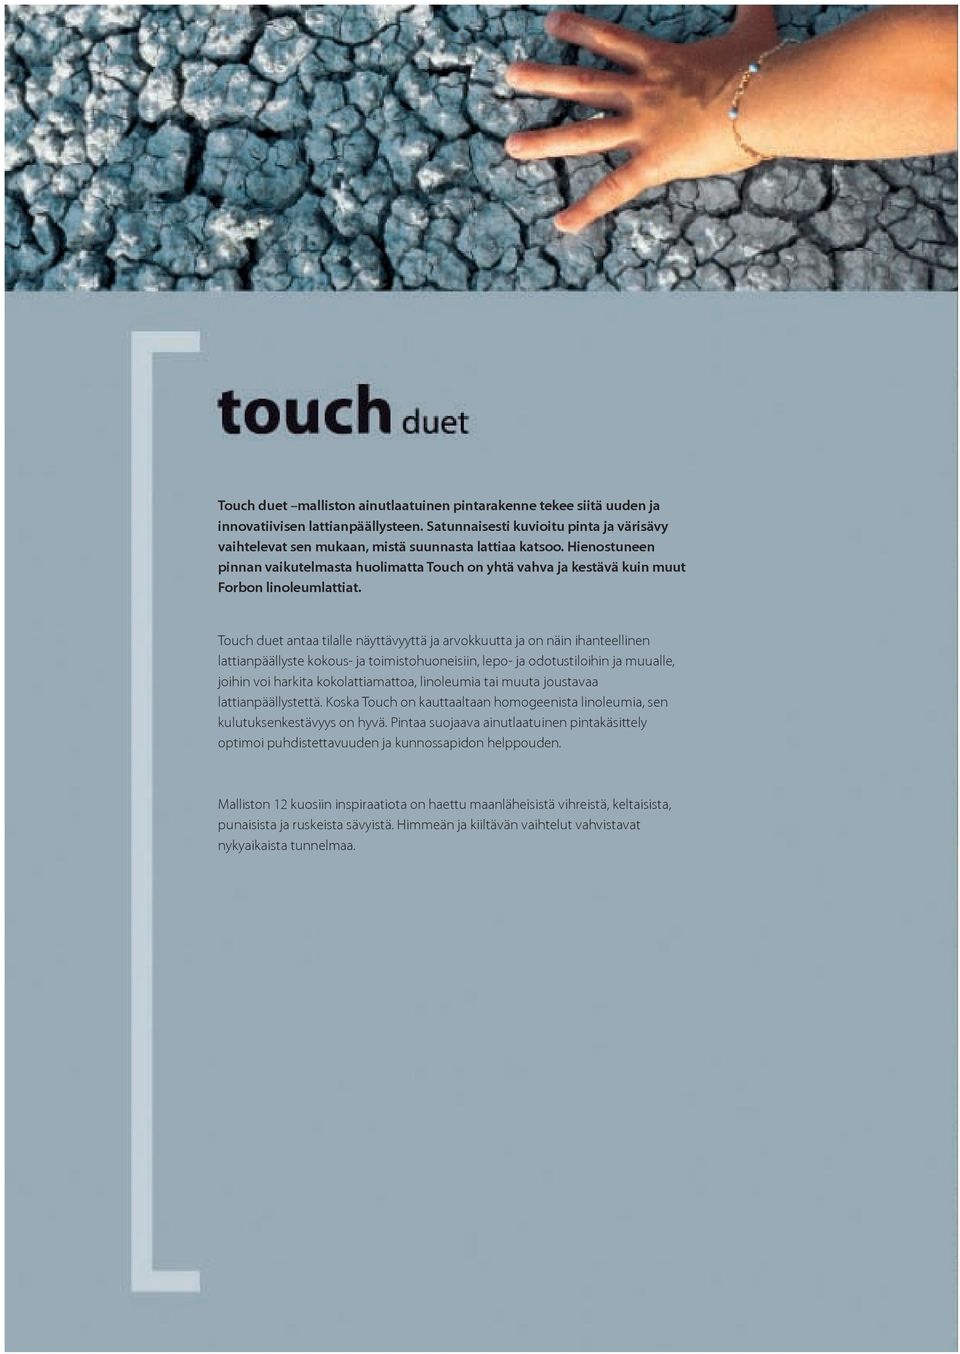 Hienostuneen pinnan vaikutelmasta huolimatta Touch on yhtä vahva ja kestävä kuin muut Forbon linoleumlattiat.